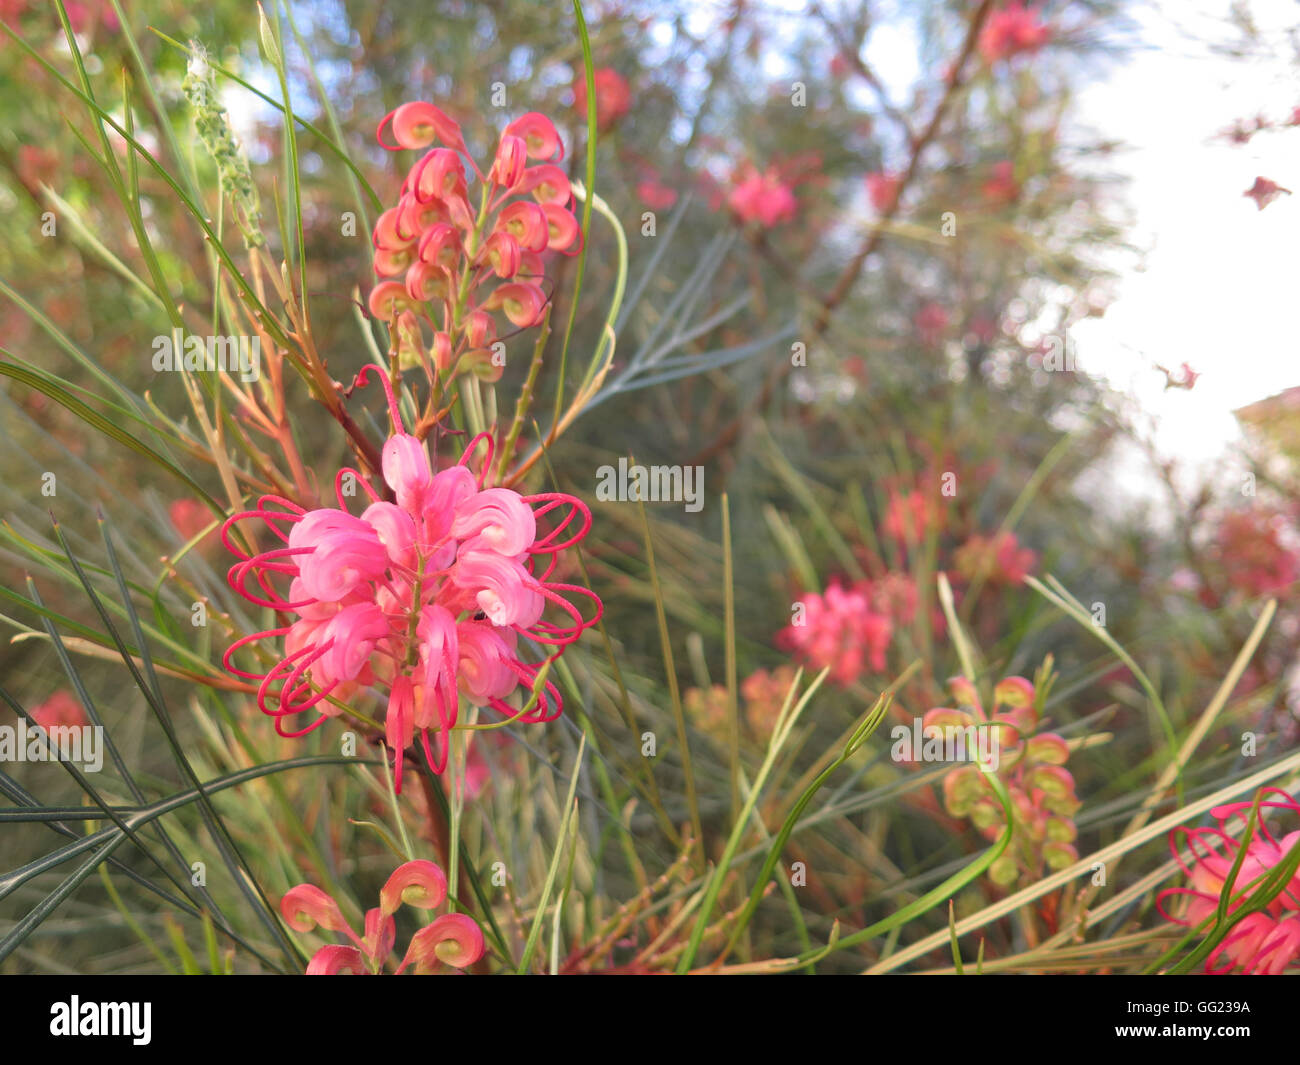 Rosa Blume der Grevillea "Eleganz", eine australische einheimische Pflanze gefunden in Andalusien Stockfoto